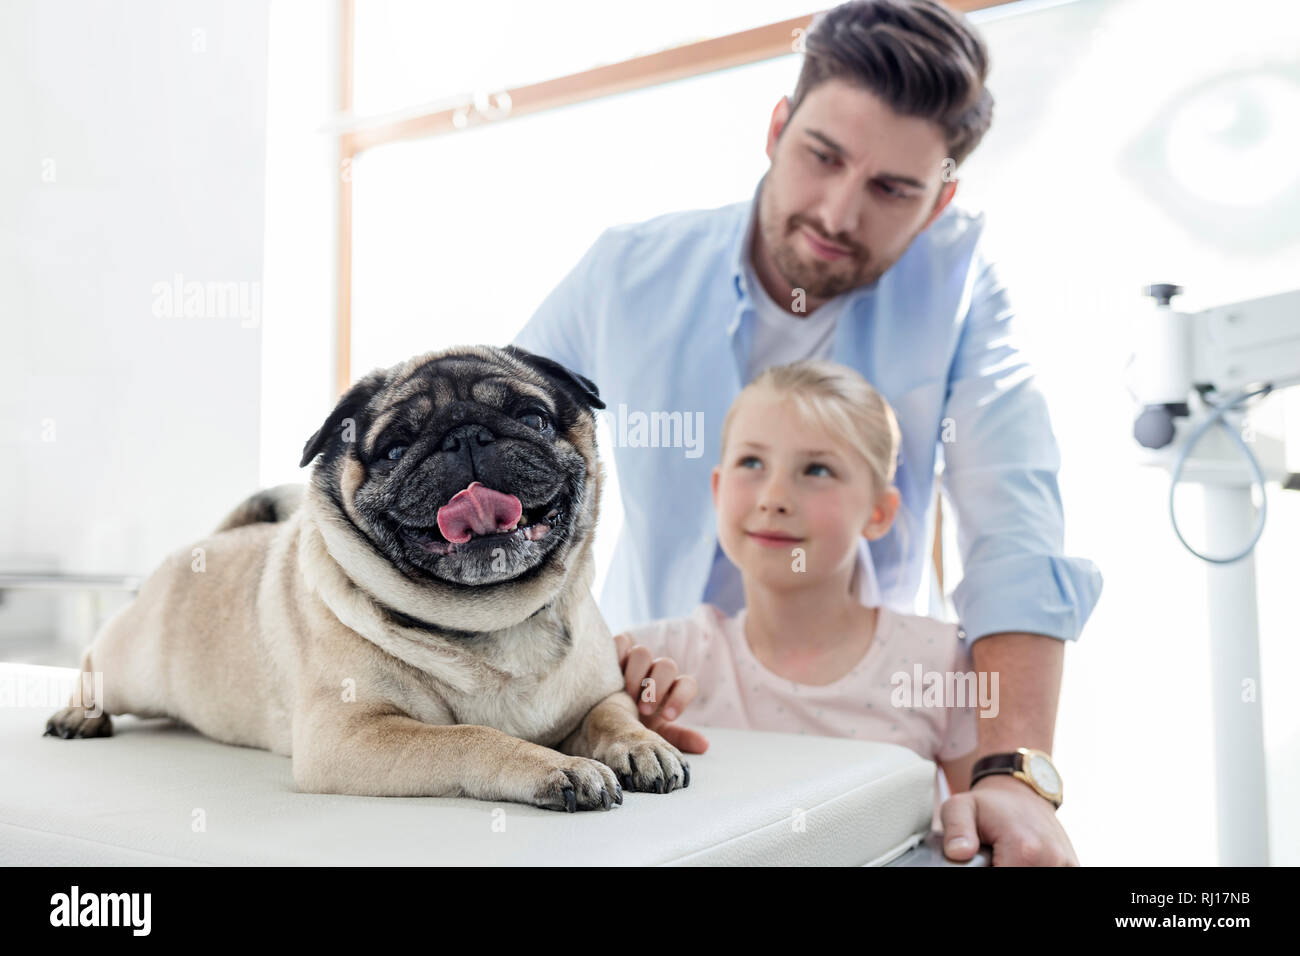 En regardant les propriétaires sur pug lit dans une clinique vétérinaire Banque D'Images